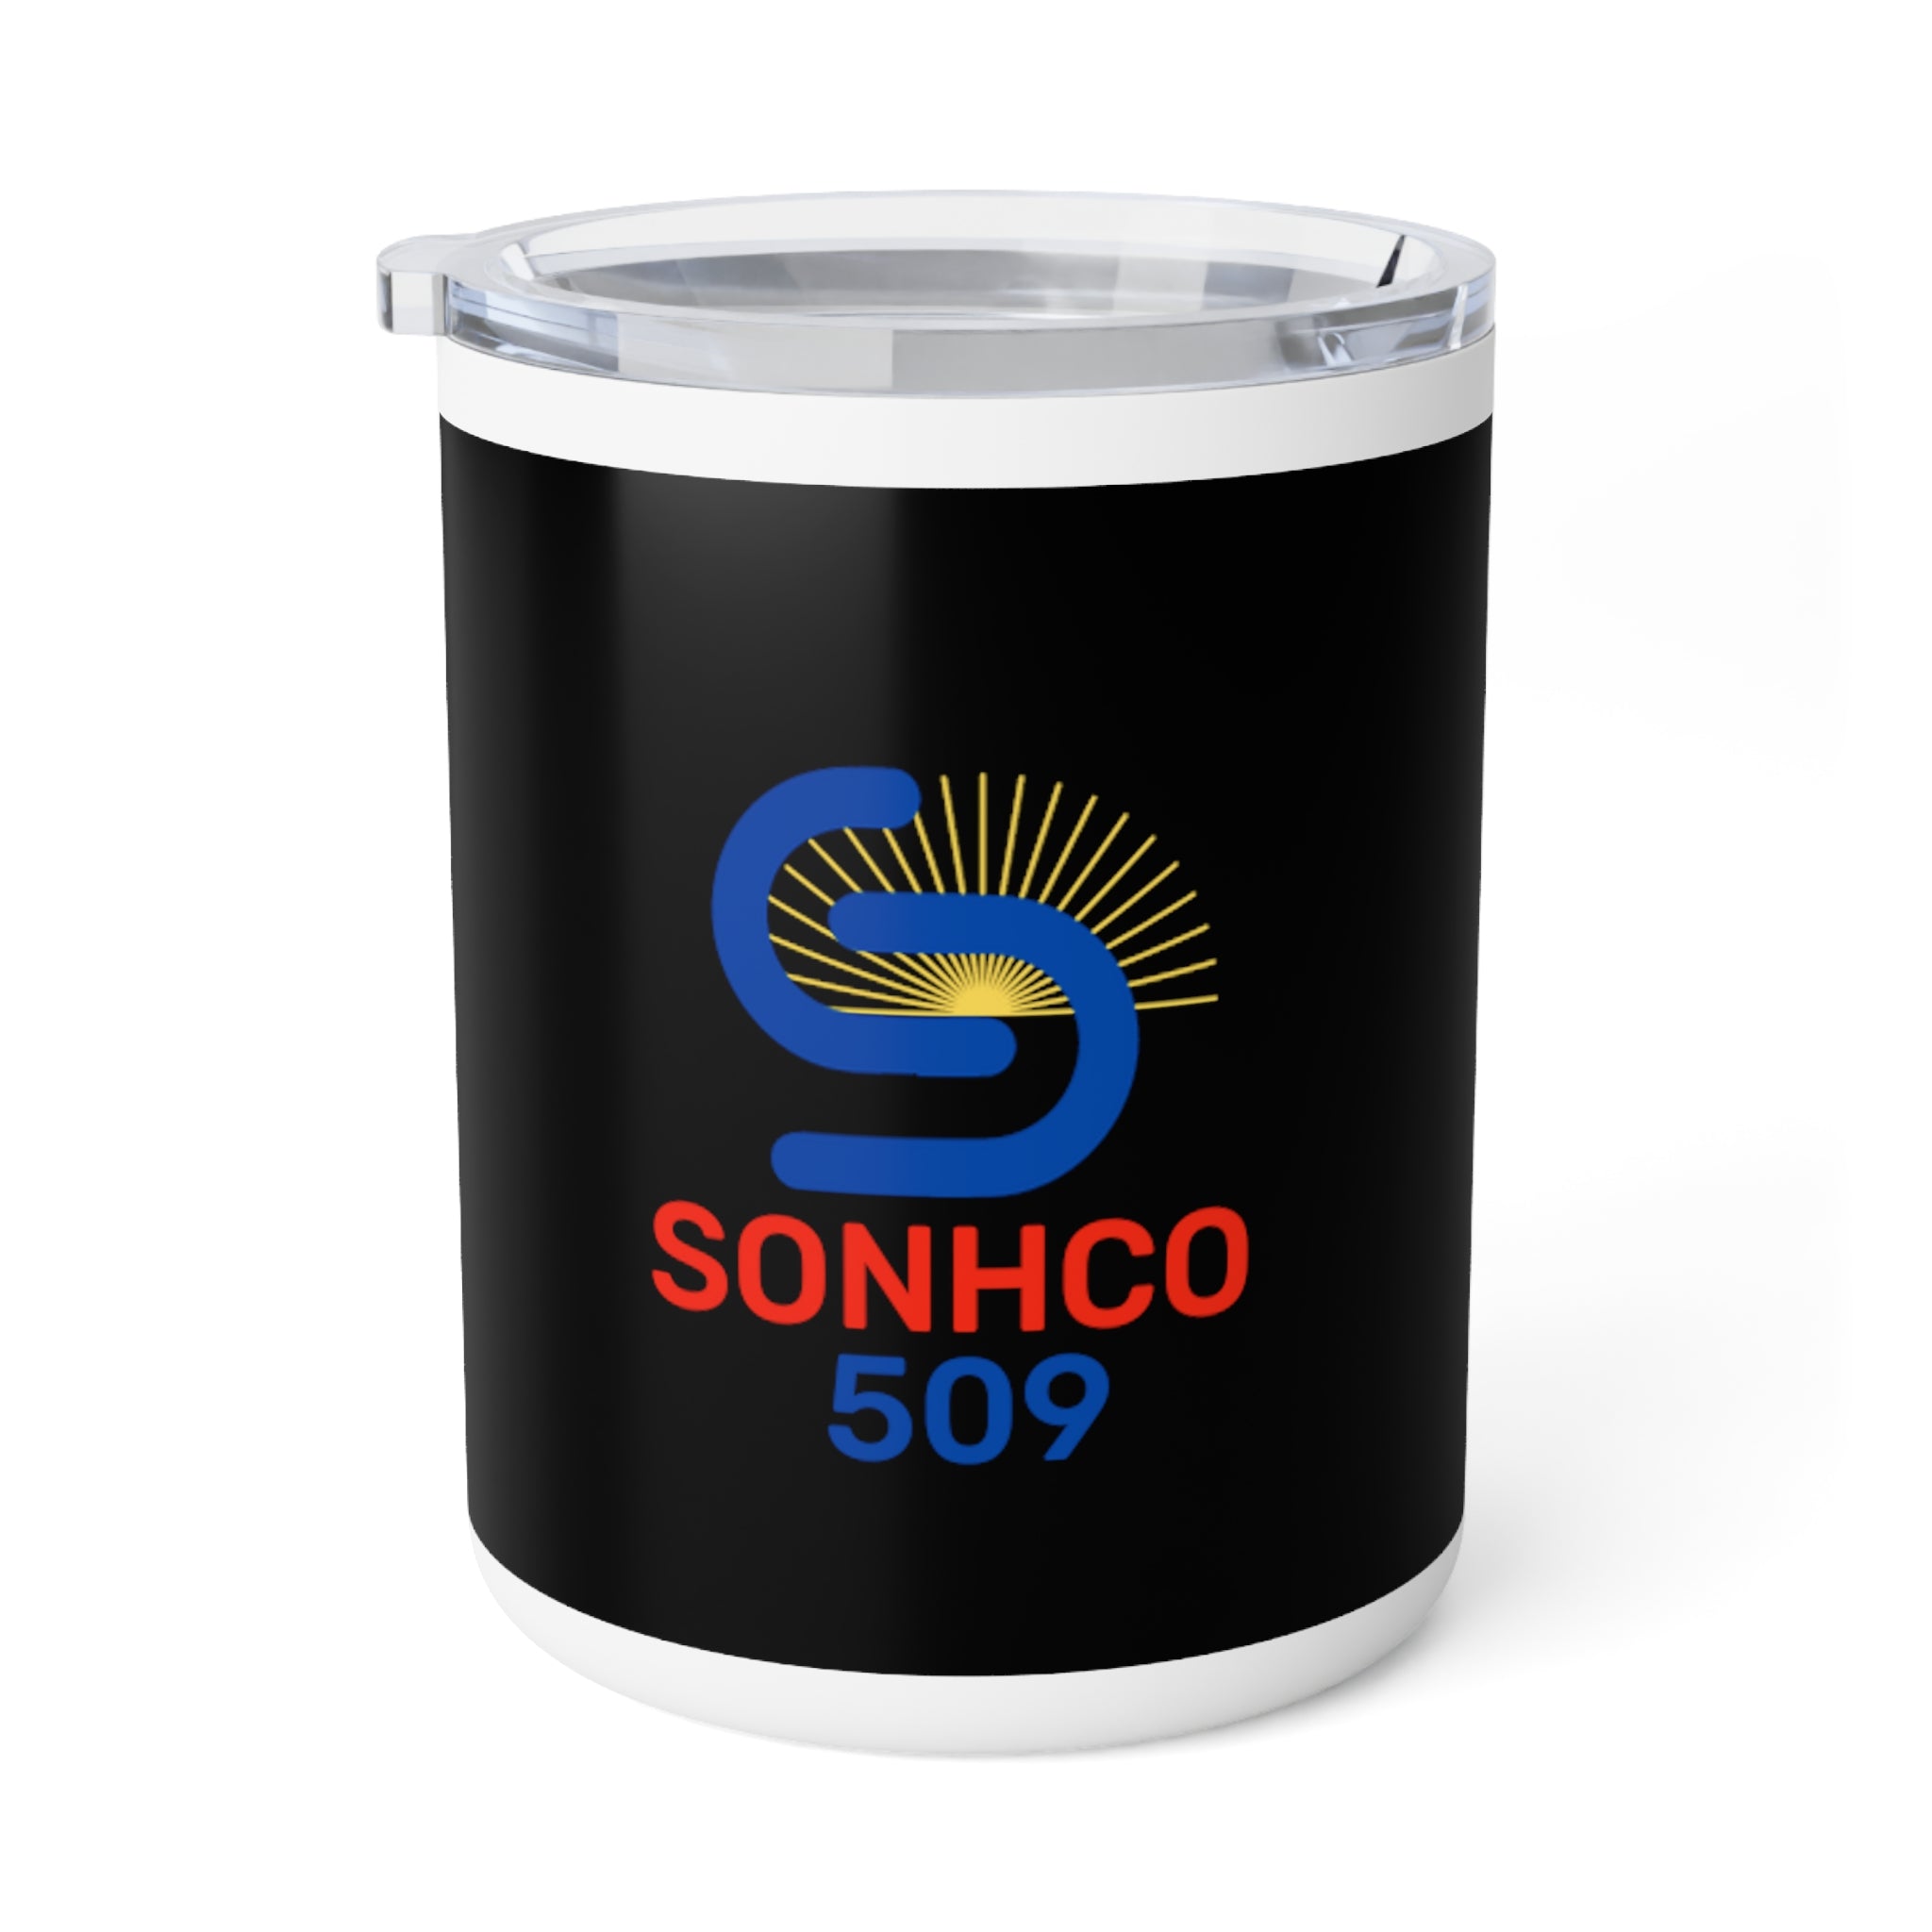 Sonhco 509 Coffee Mug Co., 10oz